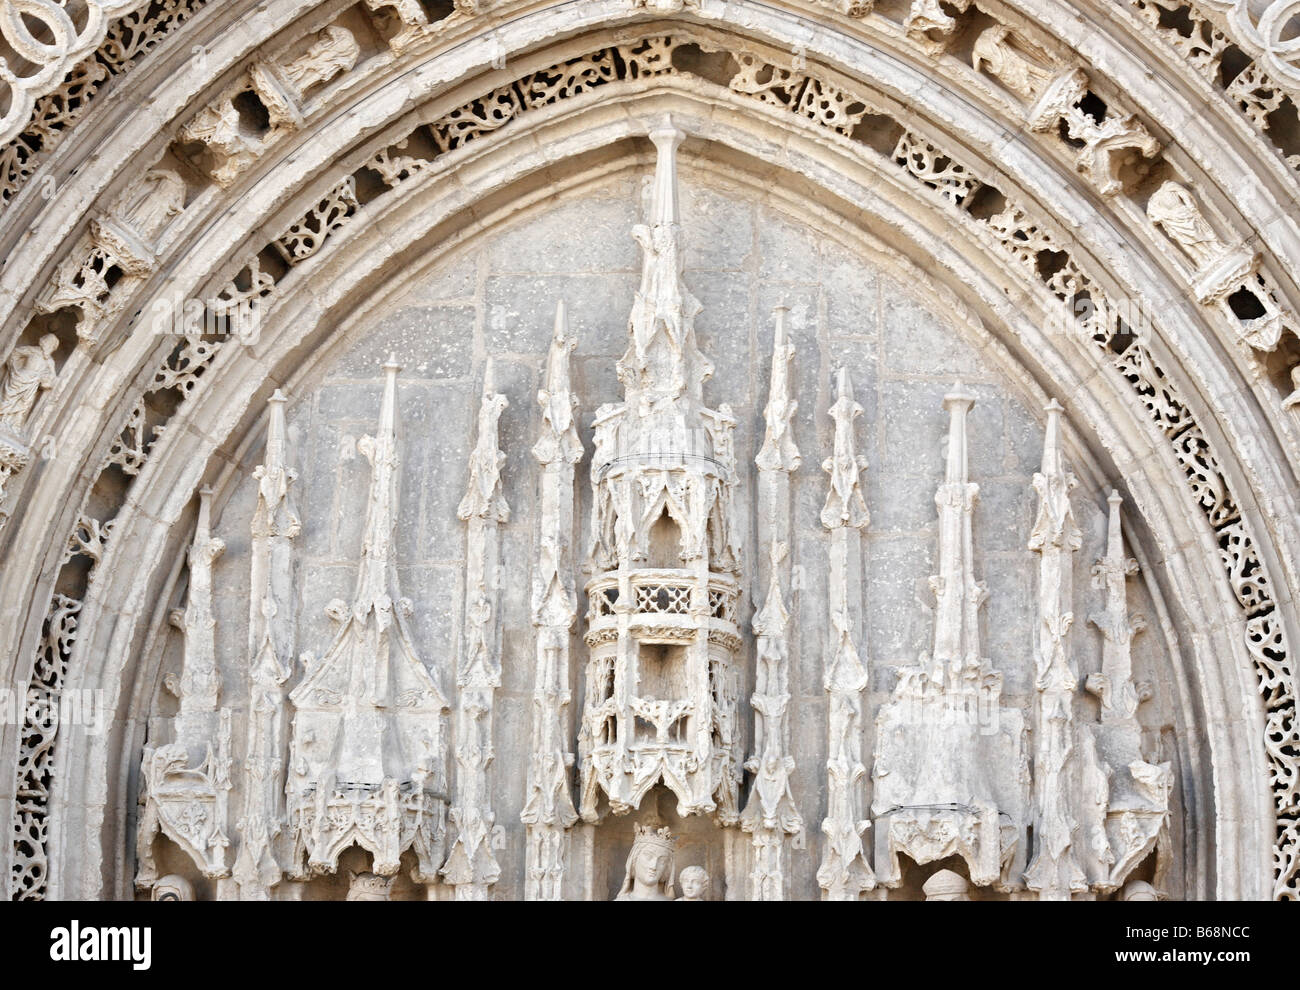 Sculpture gothique, pierre blanche portail de l'église Sainte Radegonde, Poitiers, Poitou, France Banque D'Images